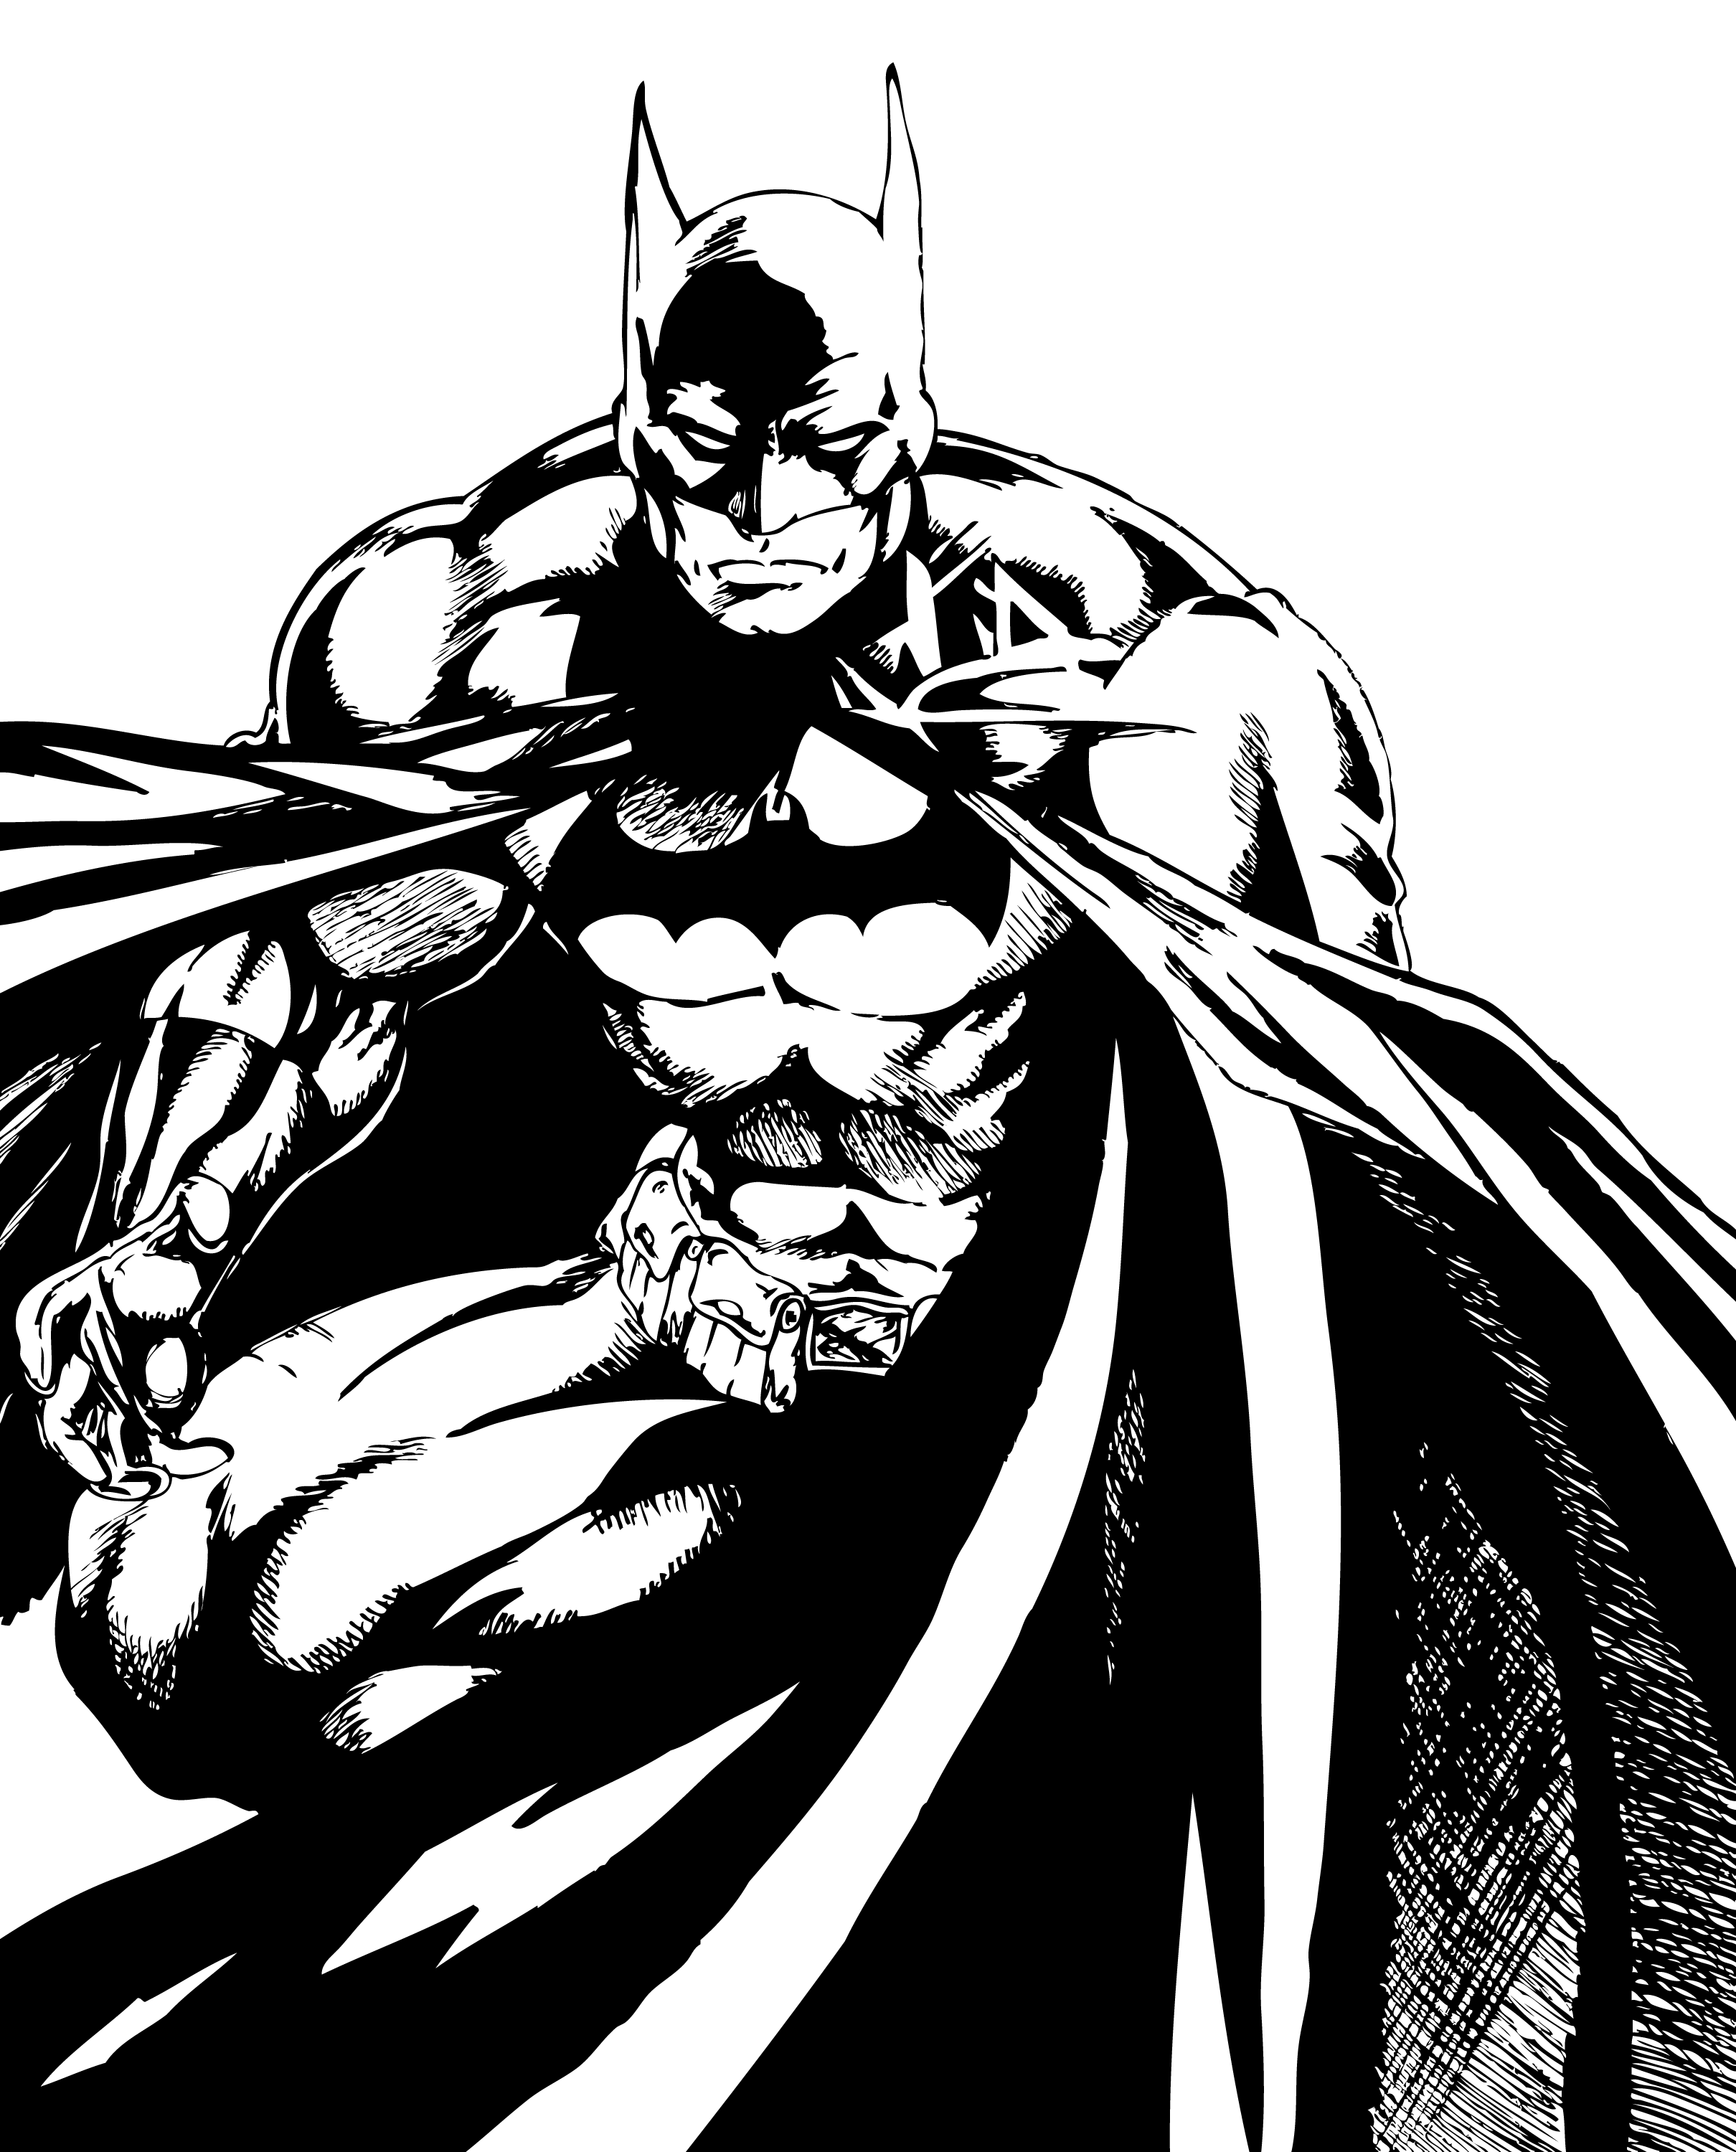 White batman. Бэтмен рисунок. Комиксы Бэтмен черно белые. Трафарет Бэтмена. Черно белые рисунки.